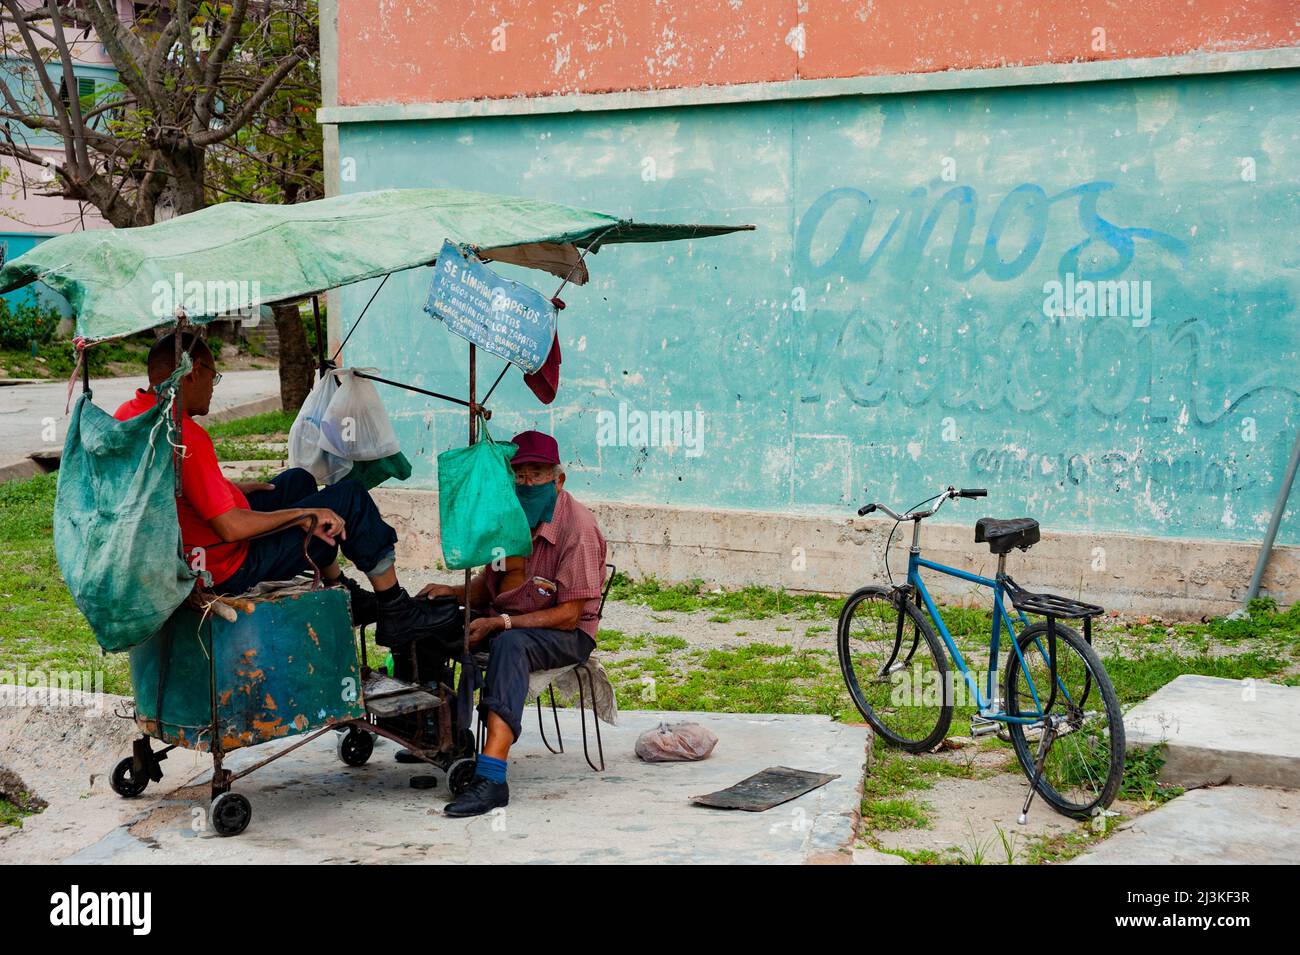 Shoeshine man travaille sur des bottes de clients à la Havane, Cuba. Banque D'Images